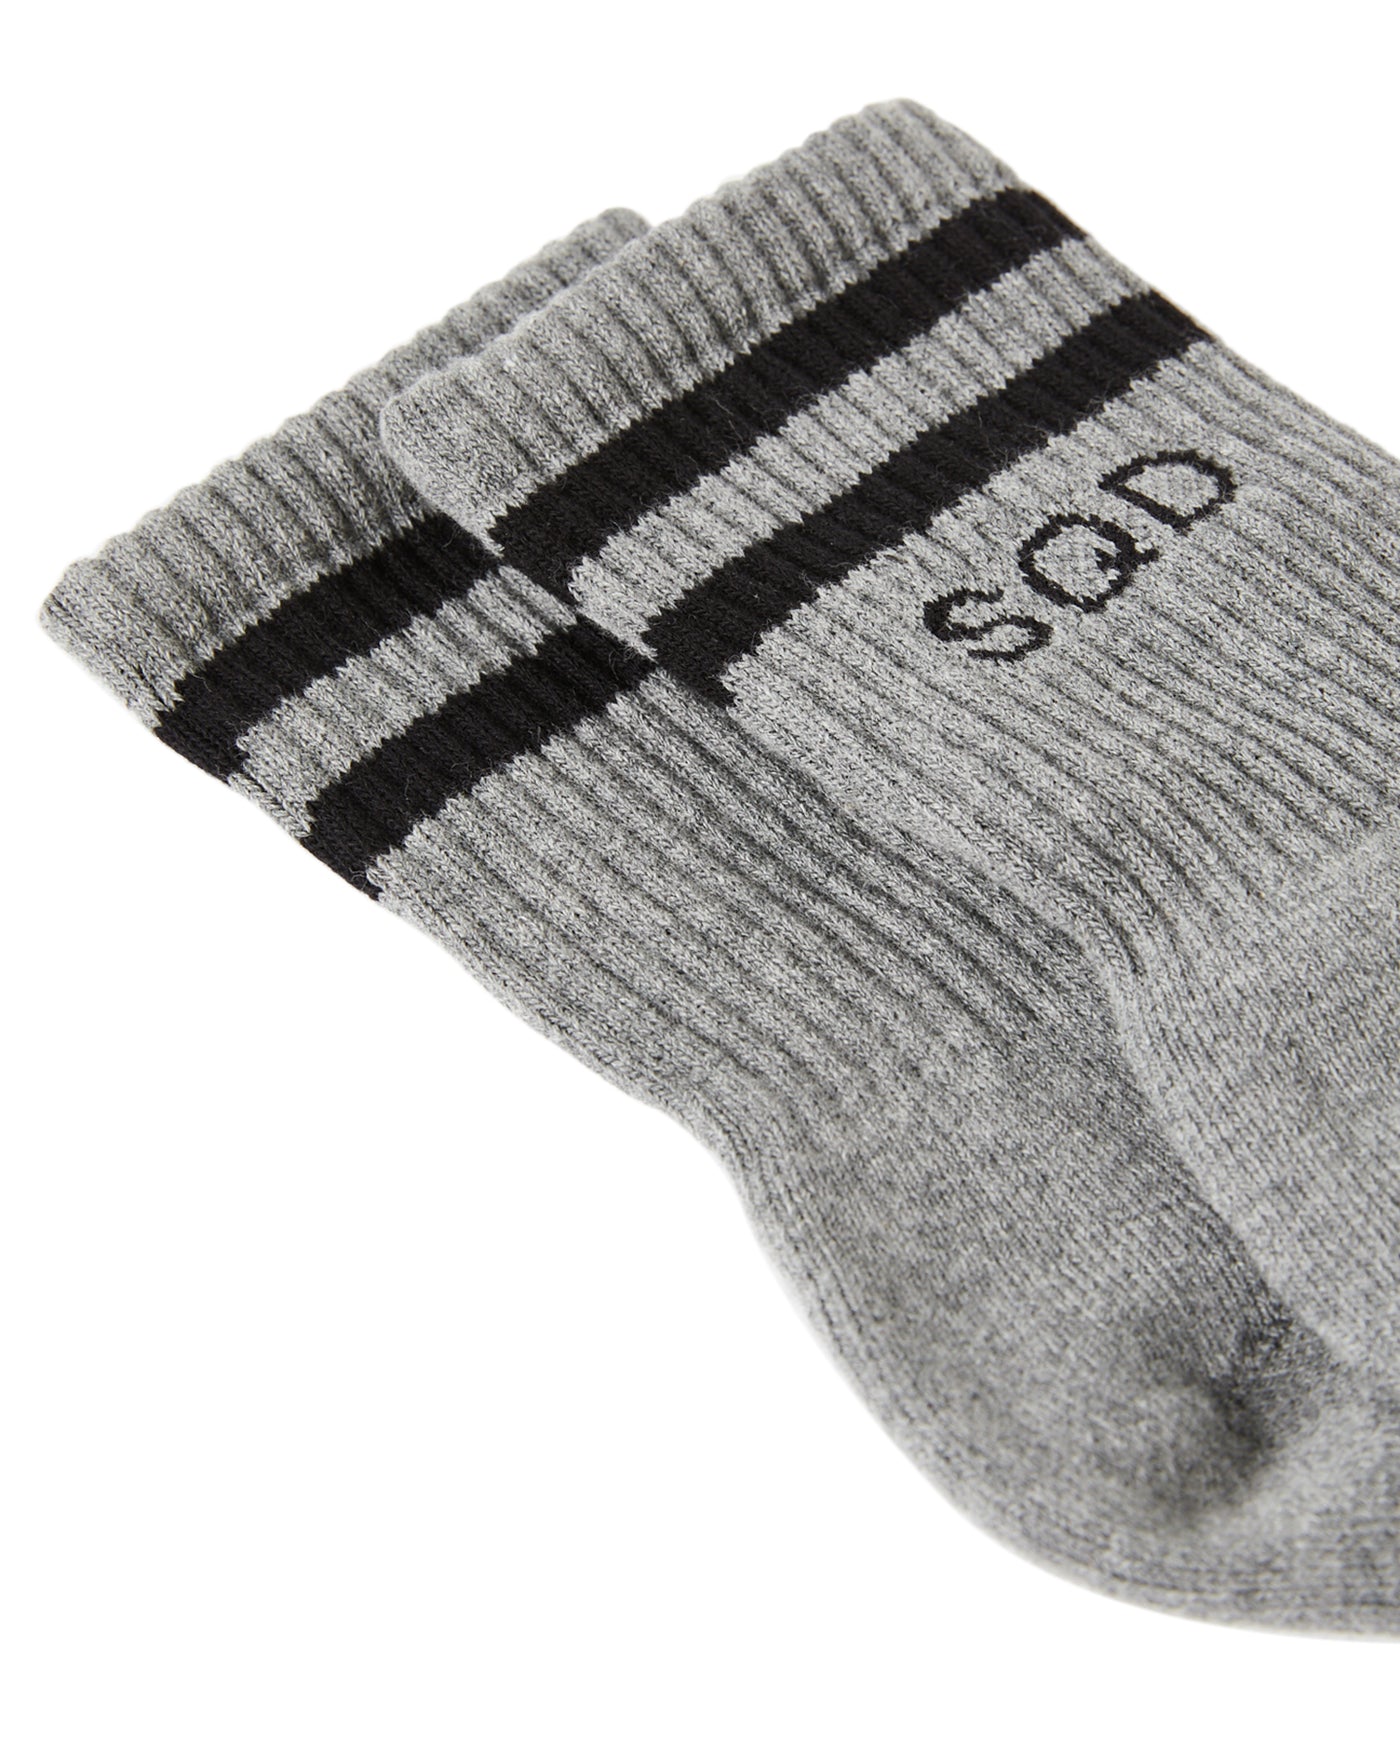 Street Sock